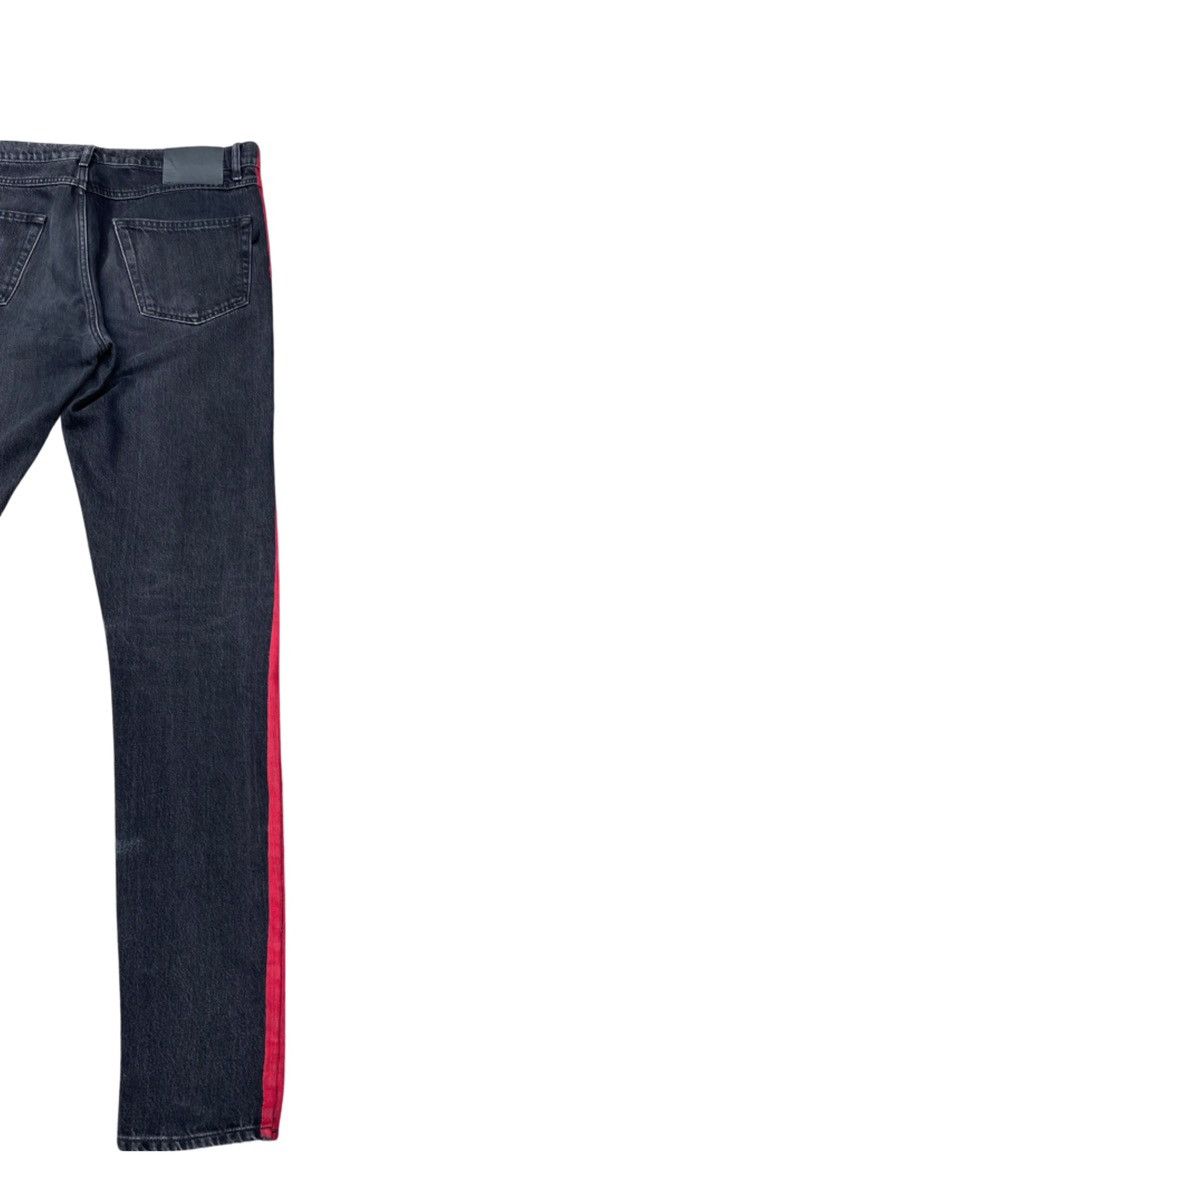 Balenciaga SS17 Red Stripe Jeans Size US 32 / EU 48 - 13 Thumbnail